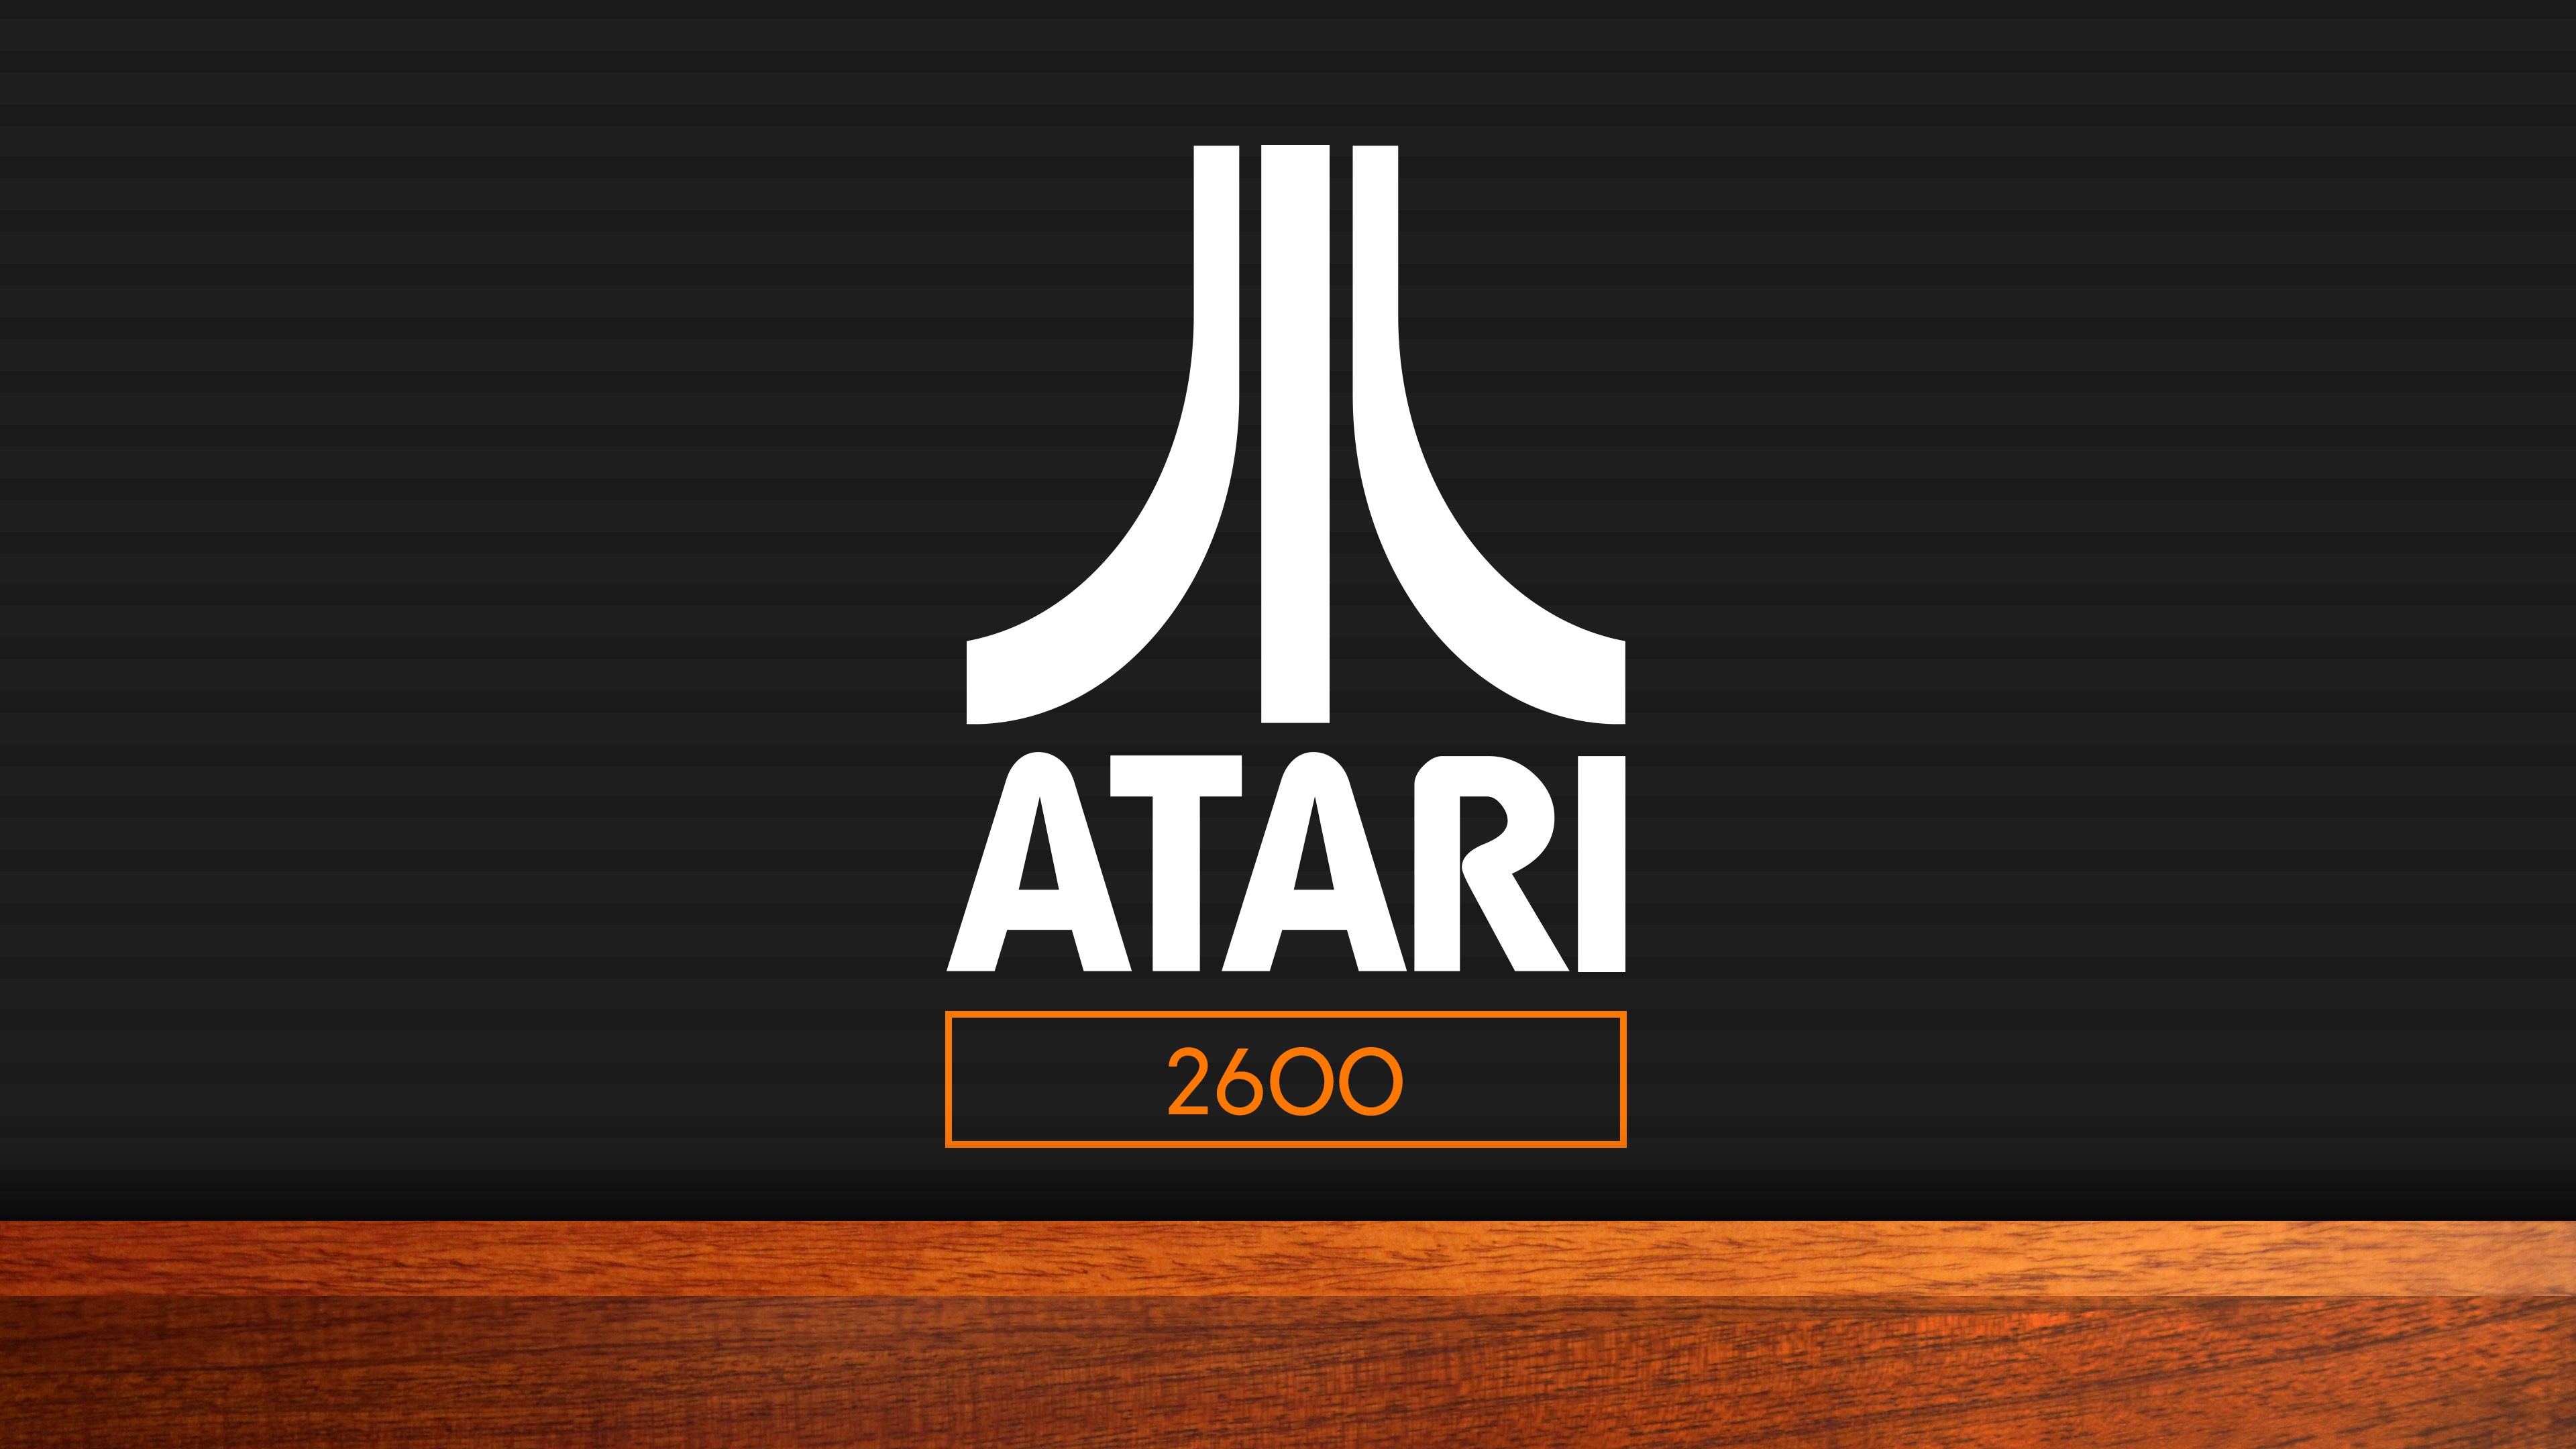 Atari Minimalist 3840x2160